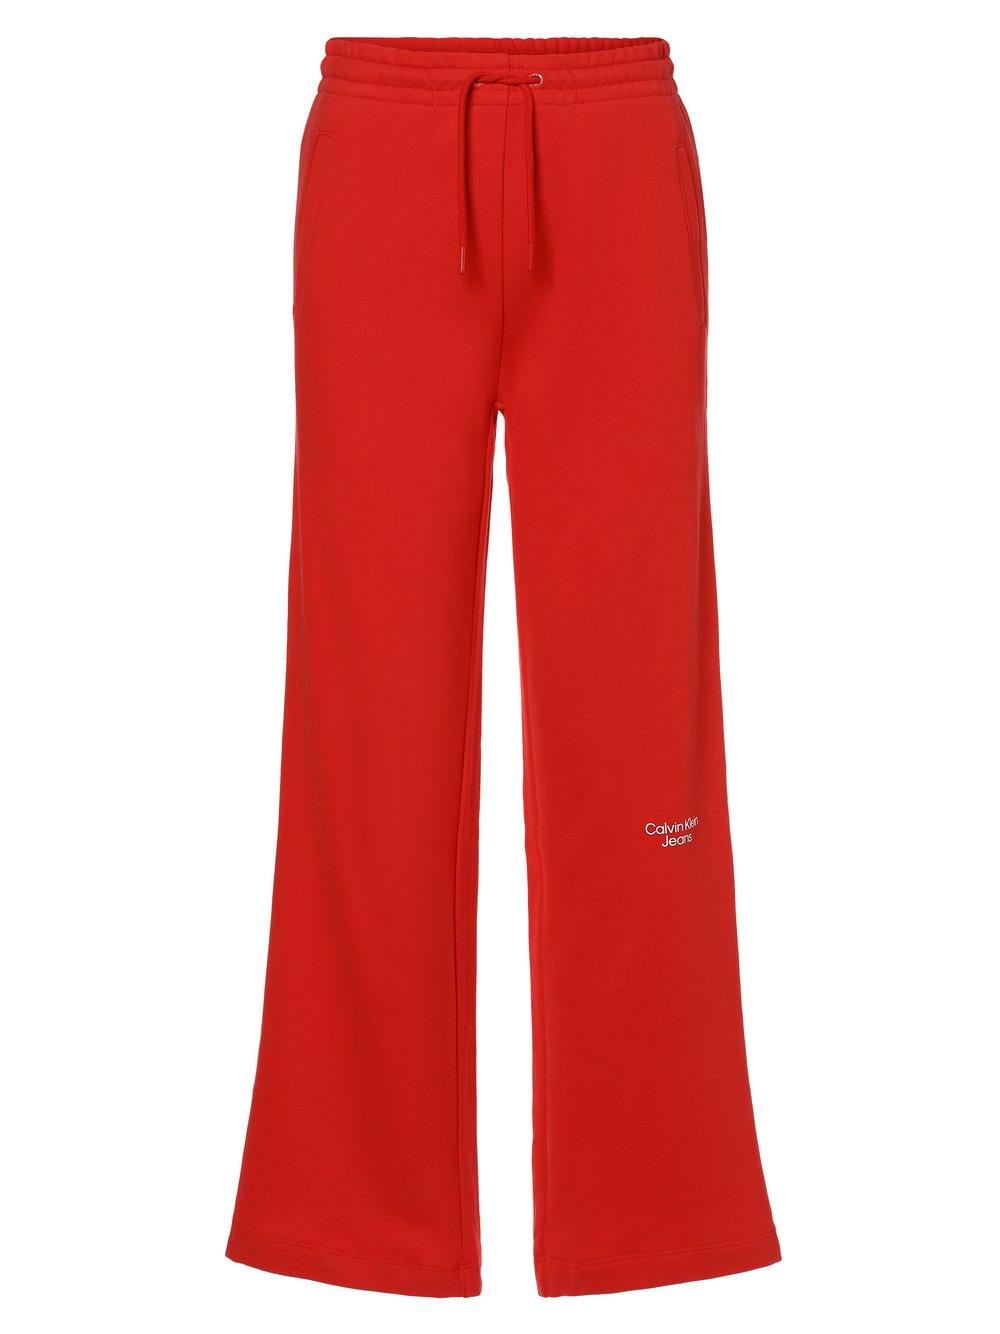 Calvin Klein Jeans - Damskie spodnie dresowe, czerwony